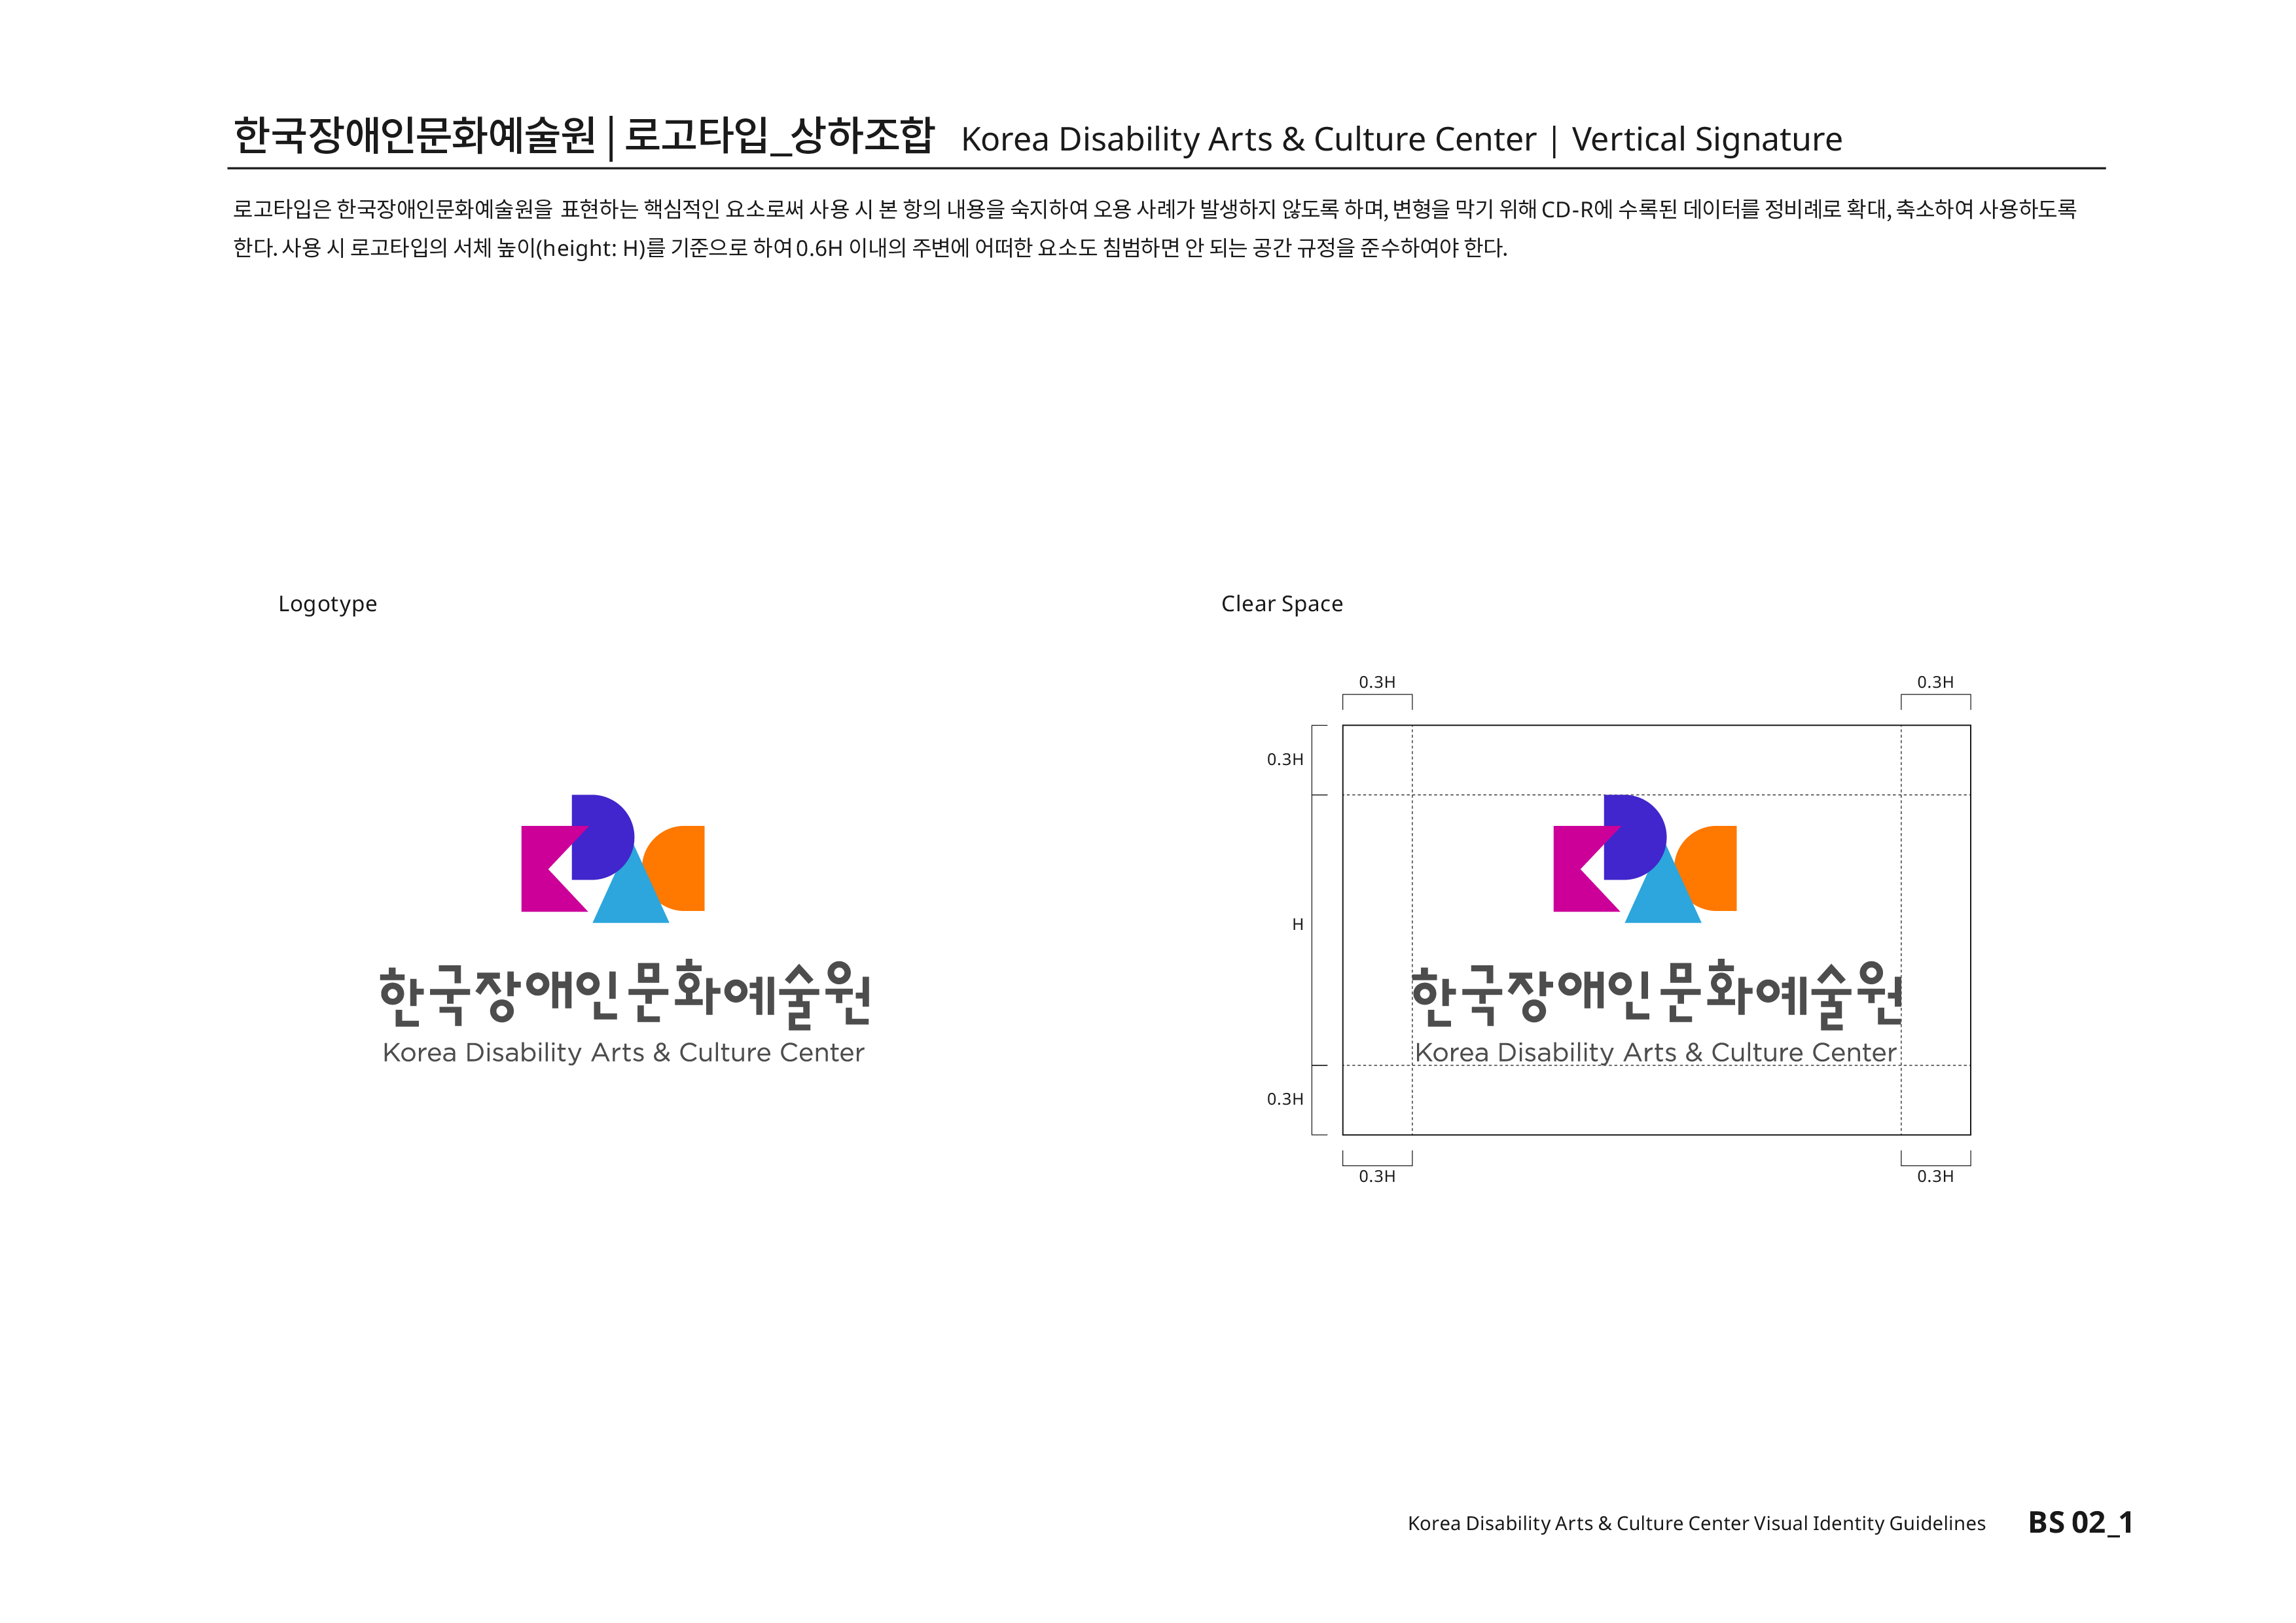 한국장애인문화예술원|로고타입_상하조합 Korea Disability Arts & Culture Center | Vertical Signature 로고타입은 한국장애인문화예술원을 표현하는 핵심적인 요소로써 사용 시 본 항의 내용을 숙지하여 오용 사례가 발생하지 않도록 하며, 변형을 막기 위해CD-R에 수록된 데이터를 정비례로 확대,축소하여 사용하도록 한다.사용 시 로고타입의 서체높이(height:H)를 기준으로 하여0.6H 이내의 주변에 어떠한 요소도 침범하면 안 된다는 공간 규정을 준수하여야 한다.